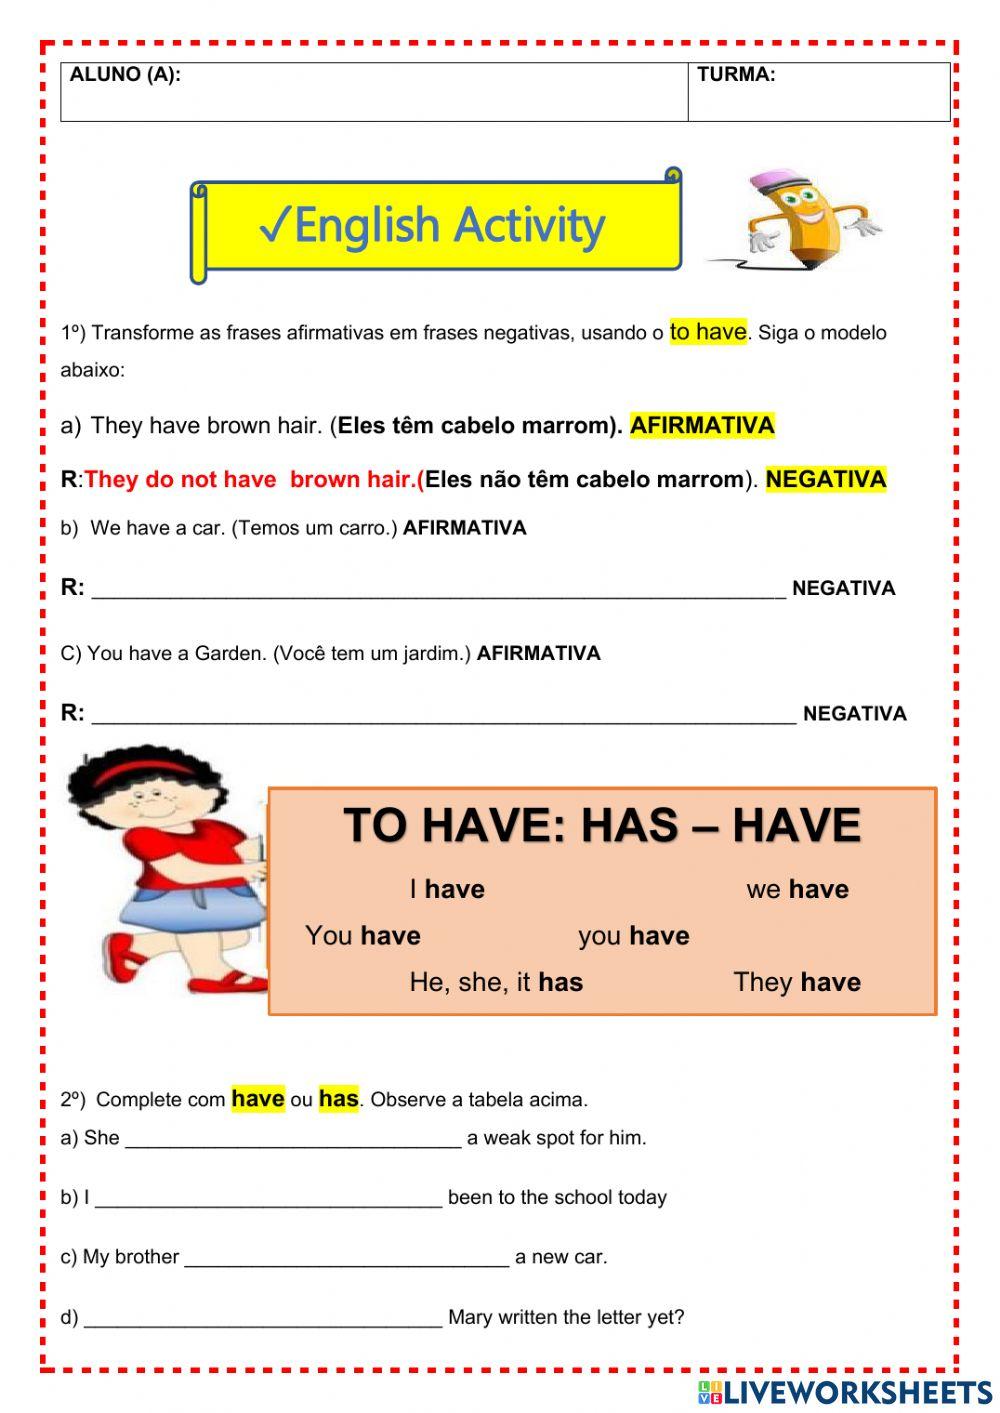 Inglês - Pronúncia e atividade Dia dos Pais  🎼🙋‍♂️A turminha do 3º ano  aproveitou a aula de inglês com uma atividade que uniu o Dia dos Pais e a  prática da